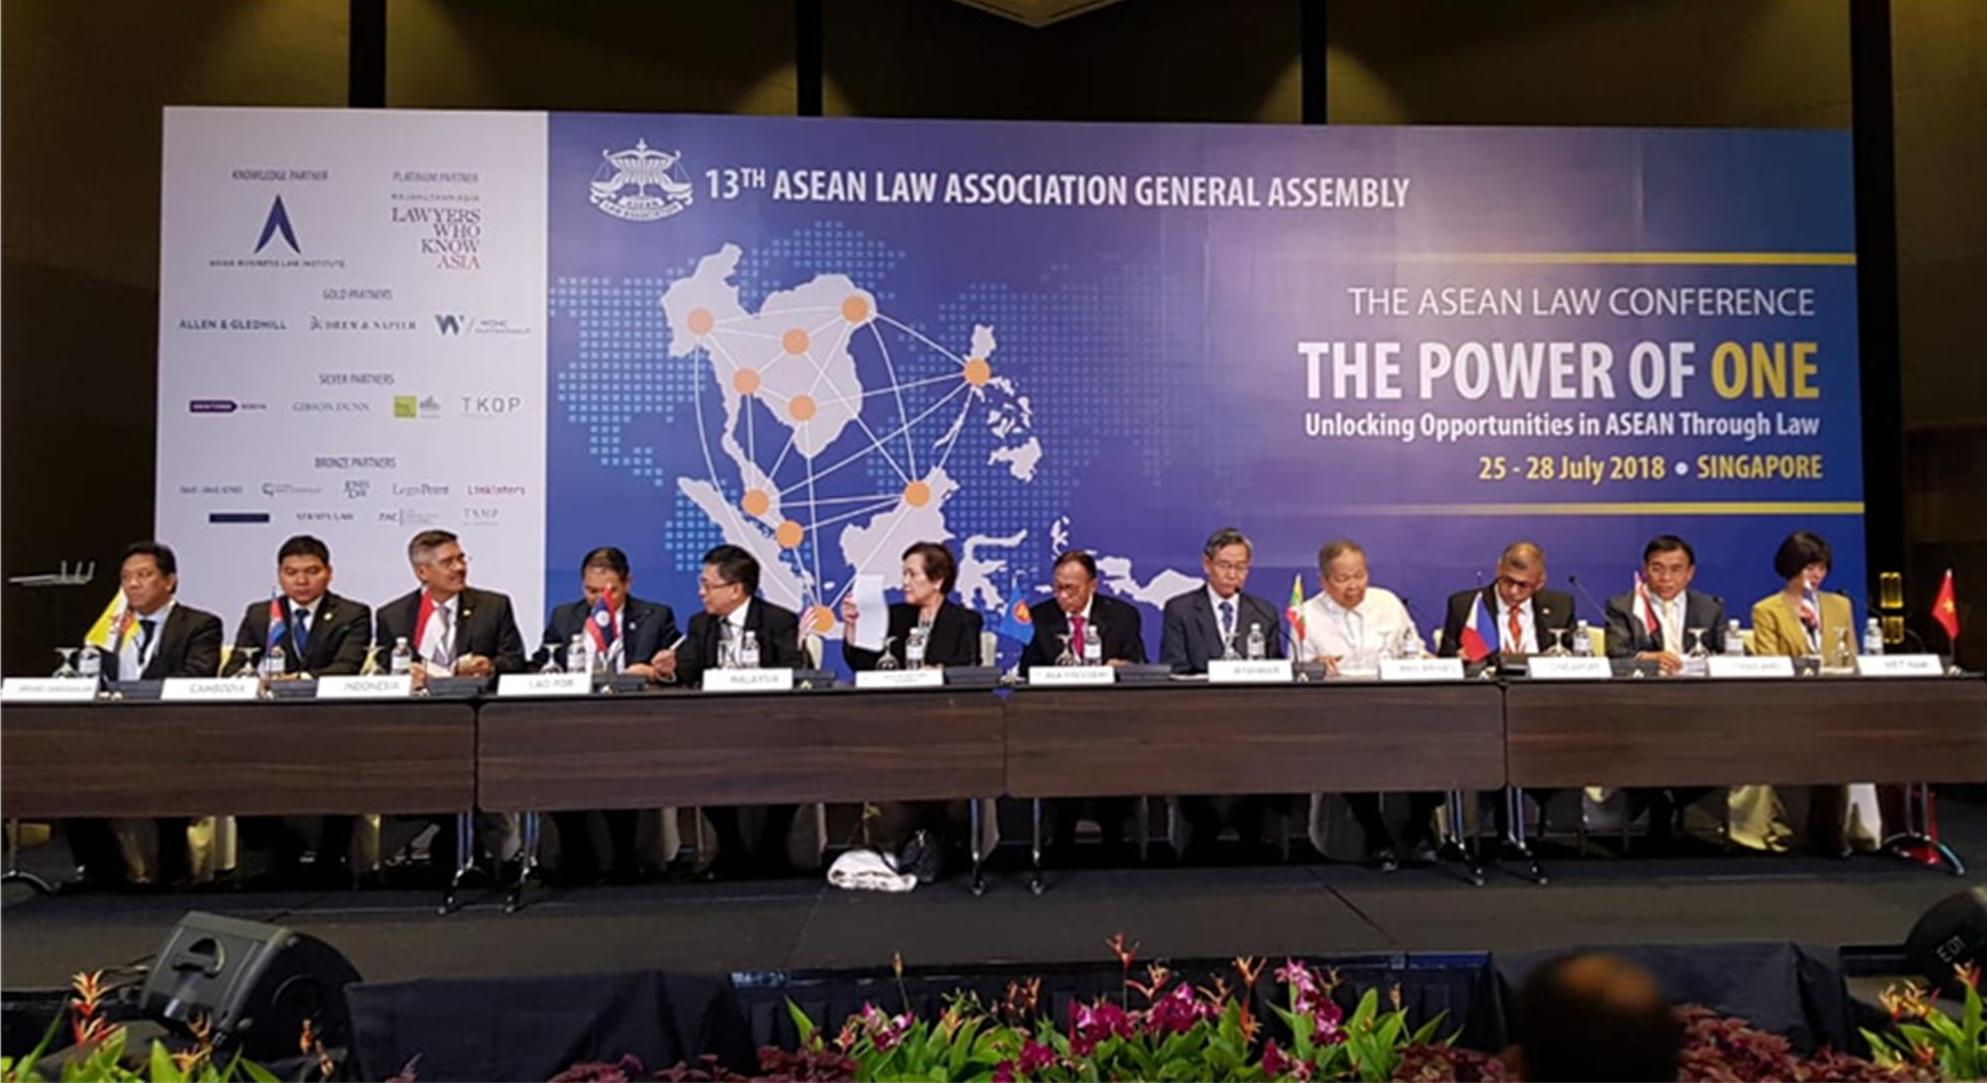 Ketua Mahkamah Agung RI Menghadiri Pembukaan General Assembly ALA ke 13 di Singapura